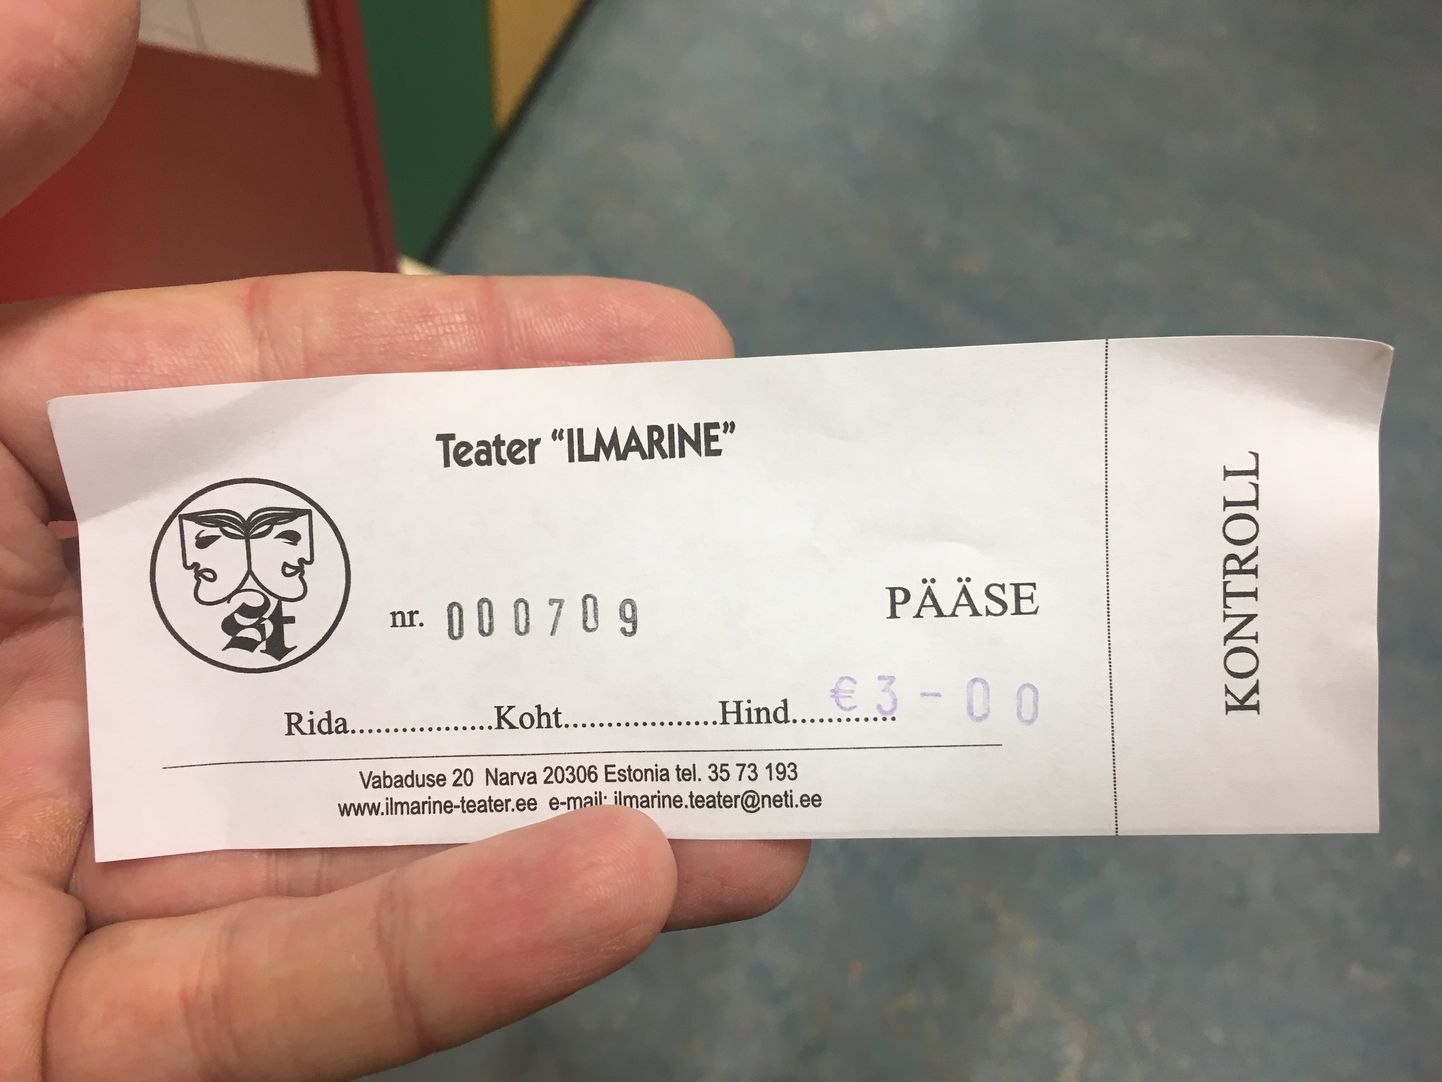 Билет на детское представление театра "Ильмарине".